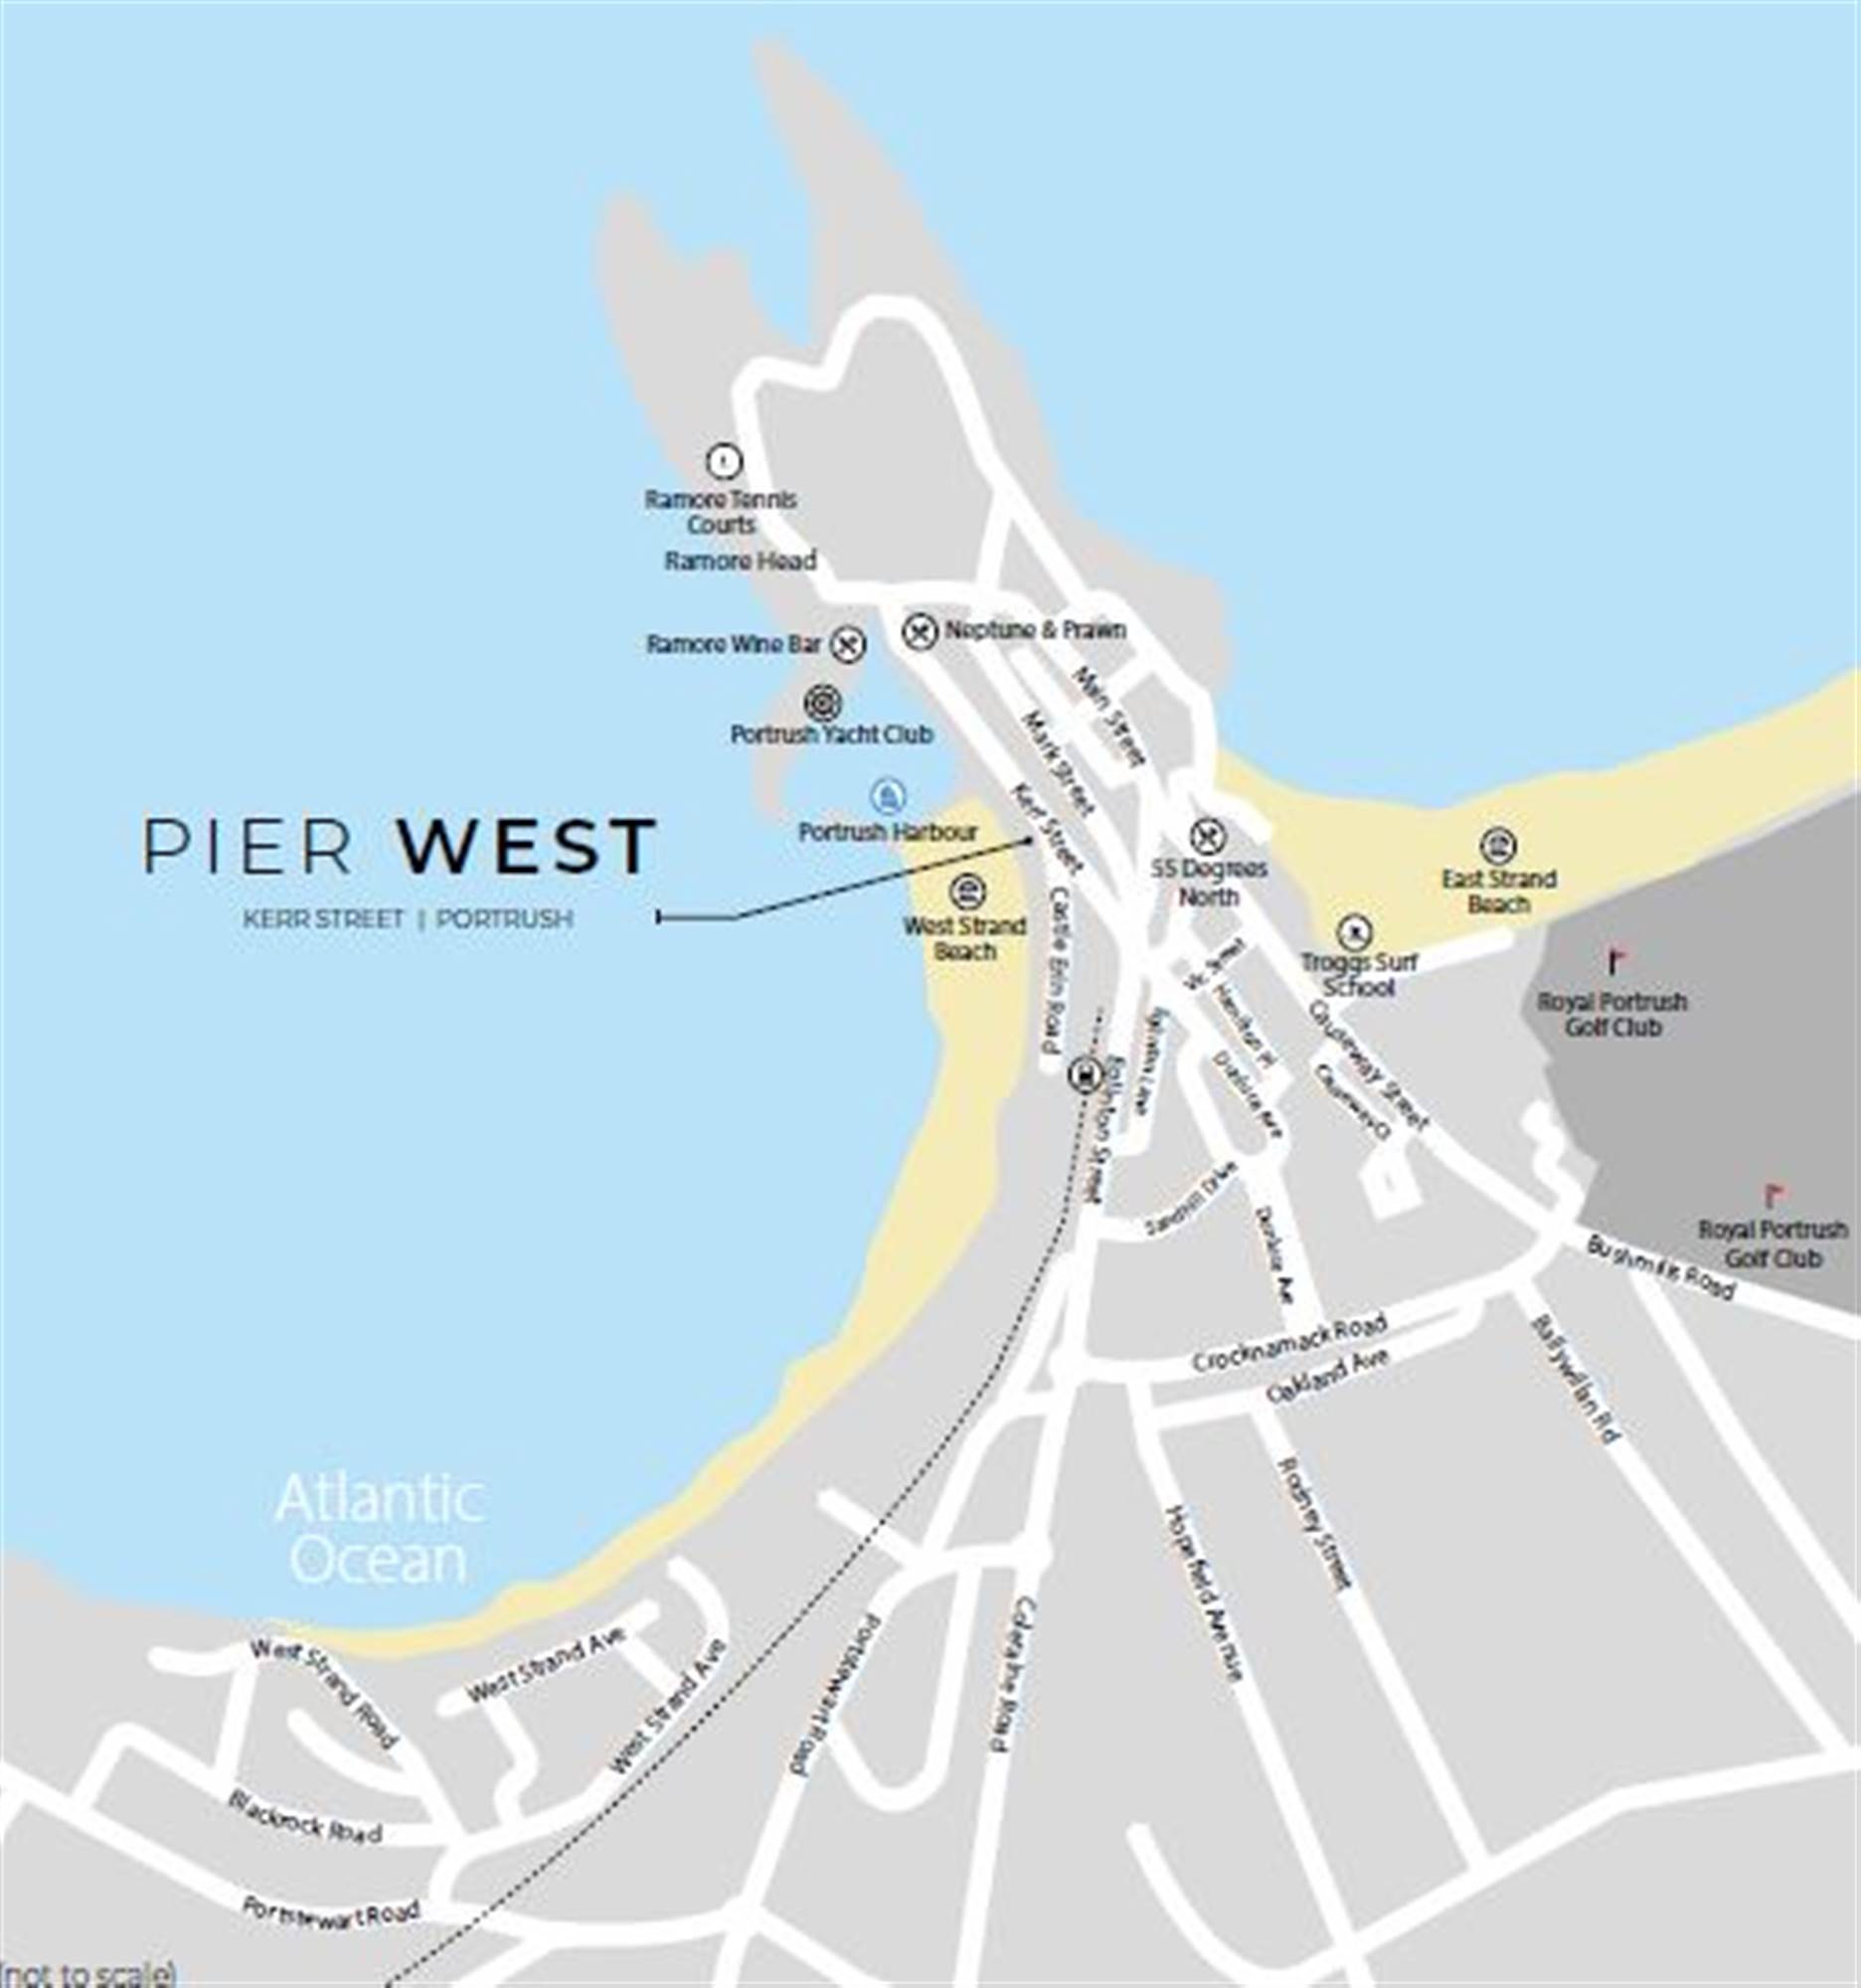 9 Pier West